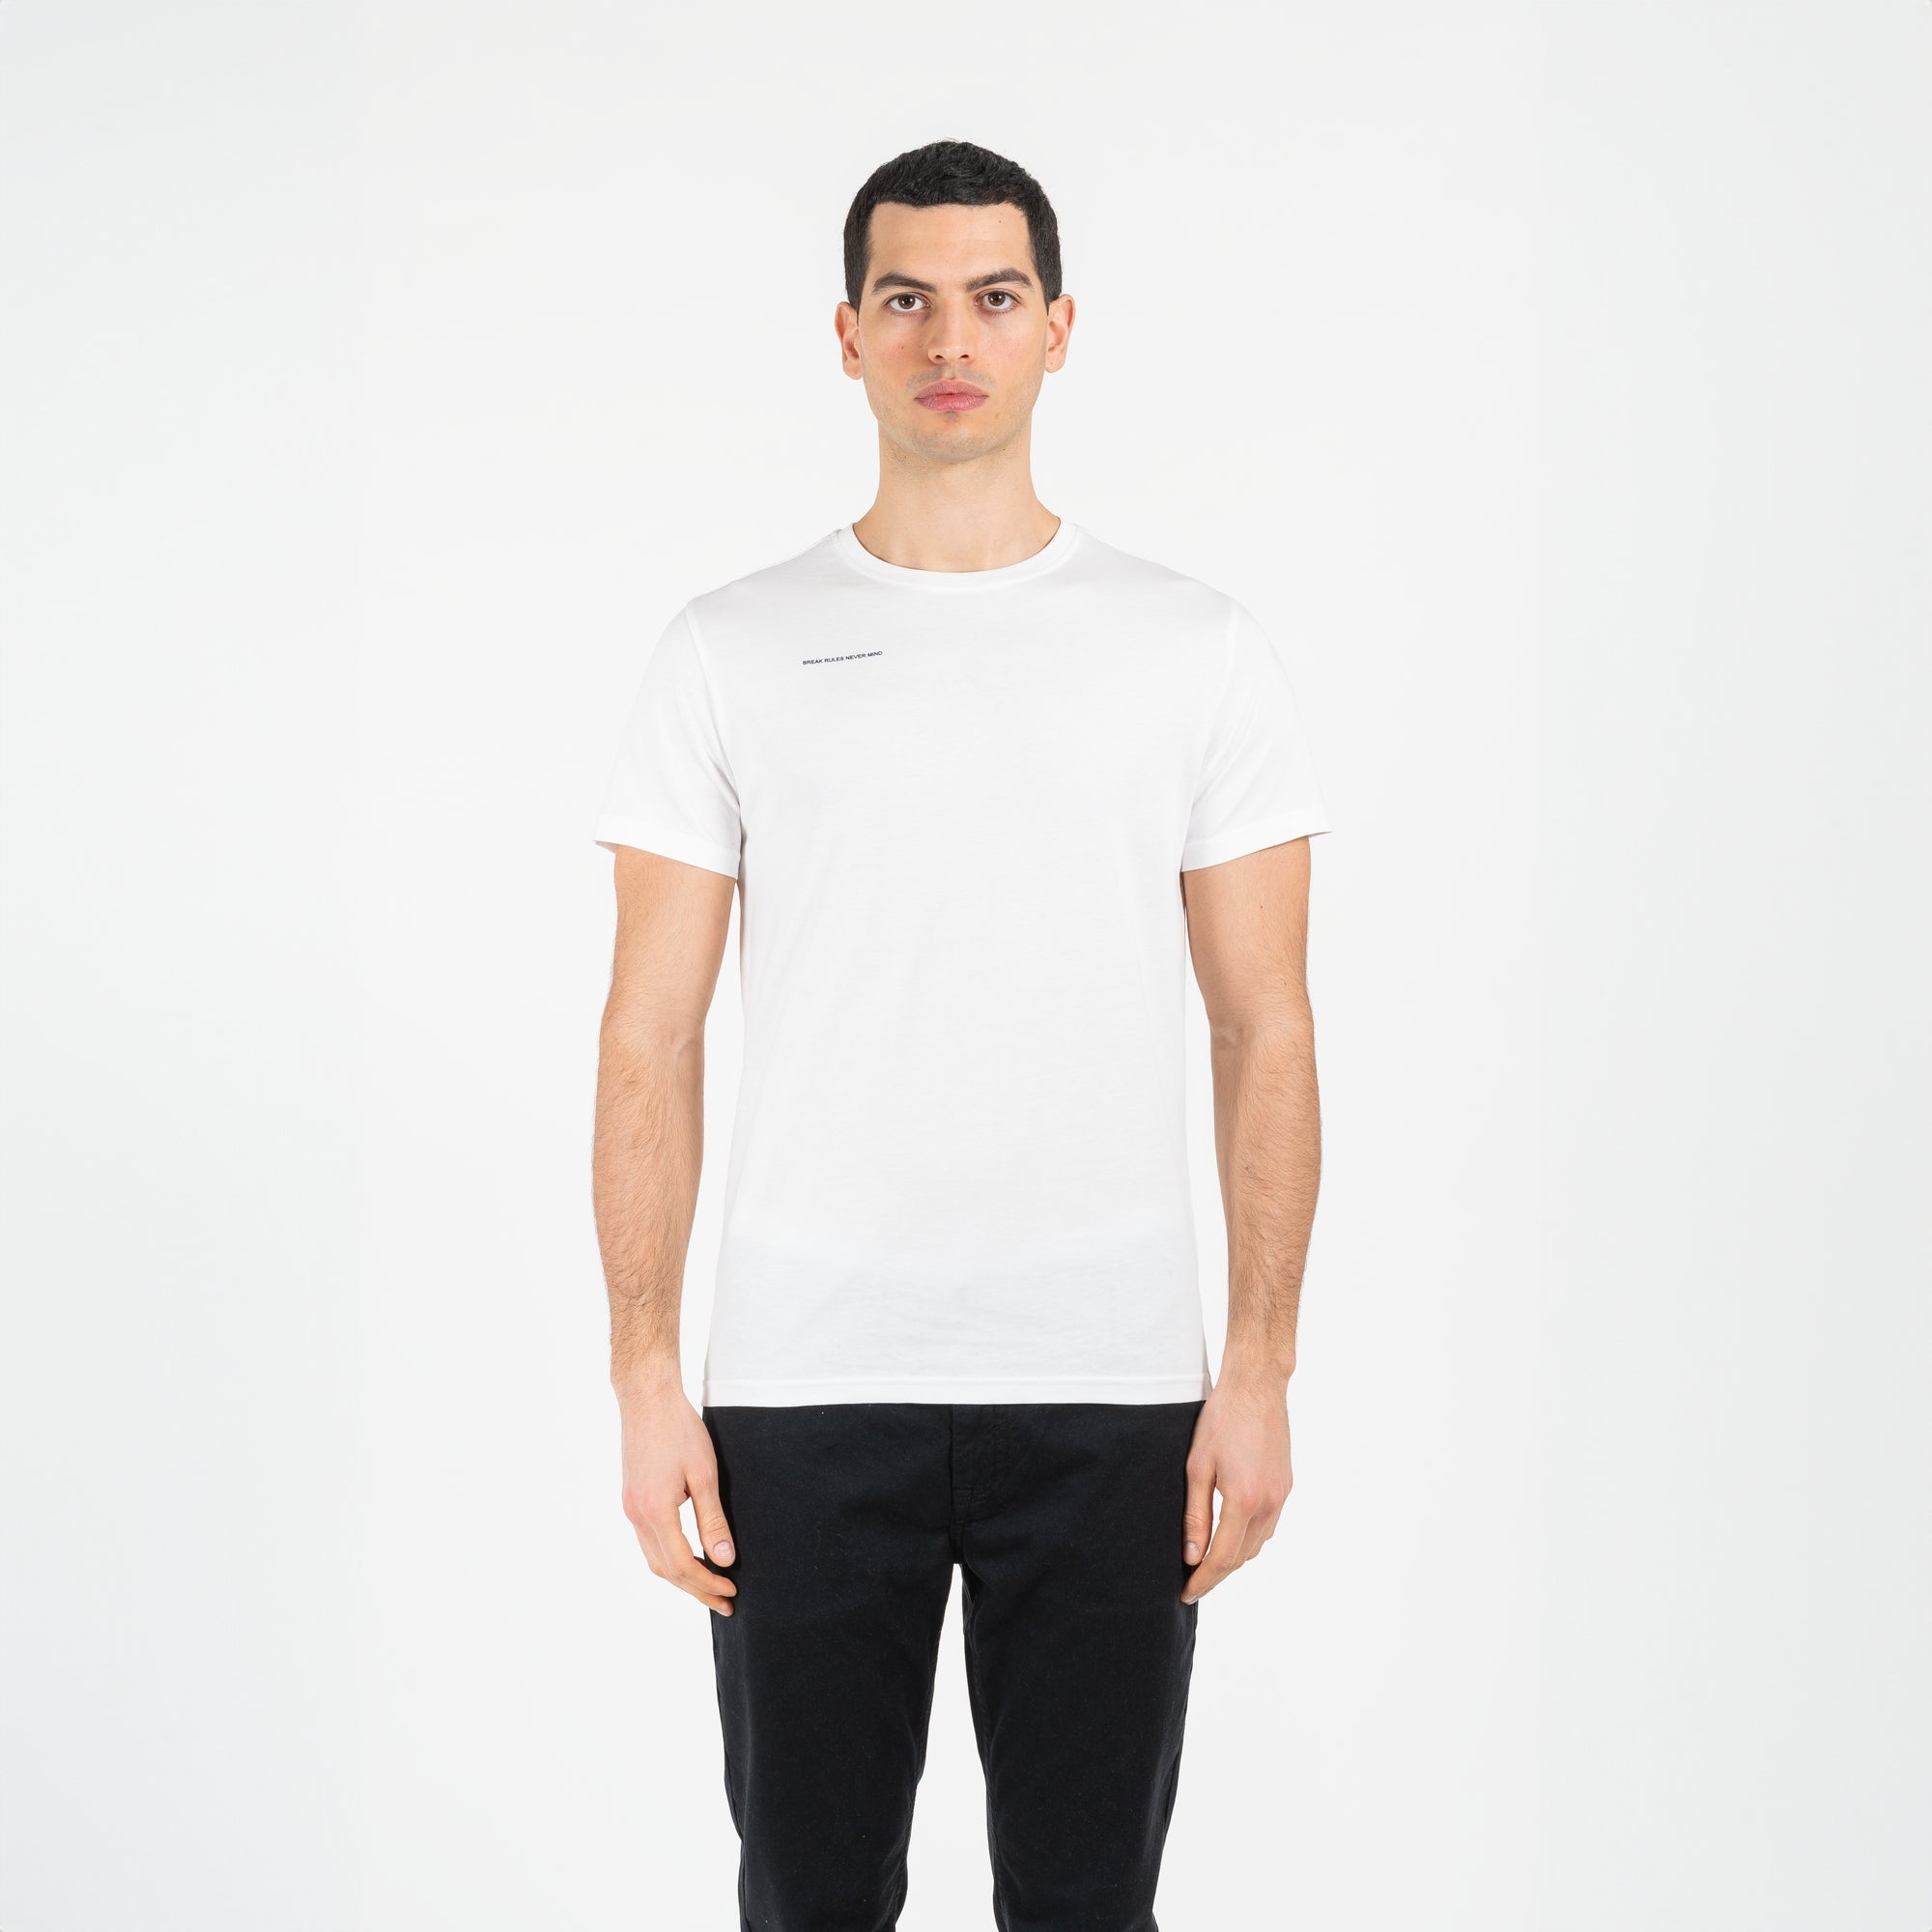 T-shirt jersey cotone organico narrow con stampa davanti